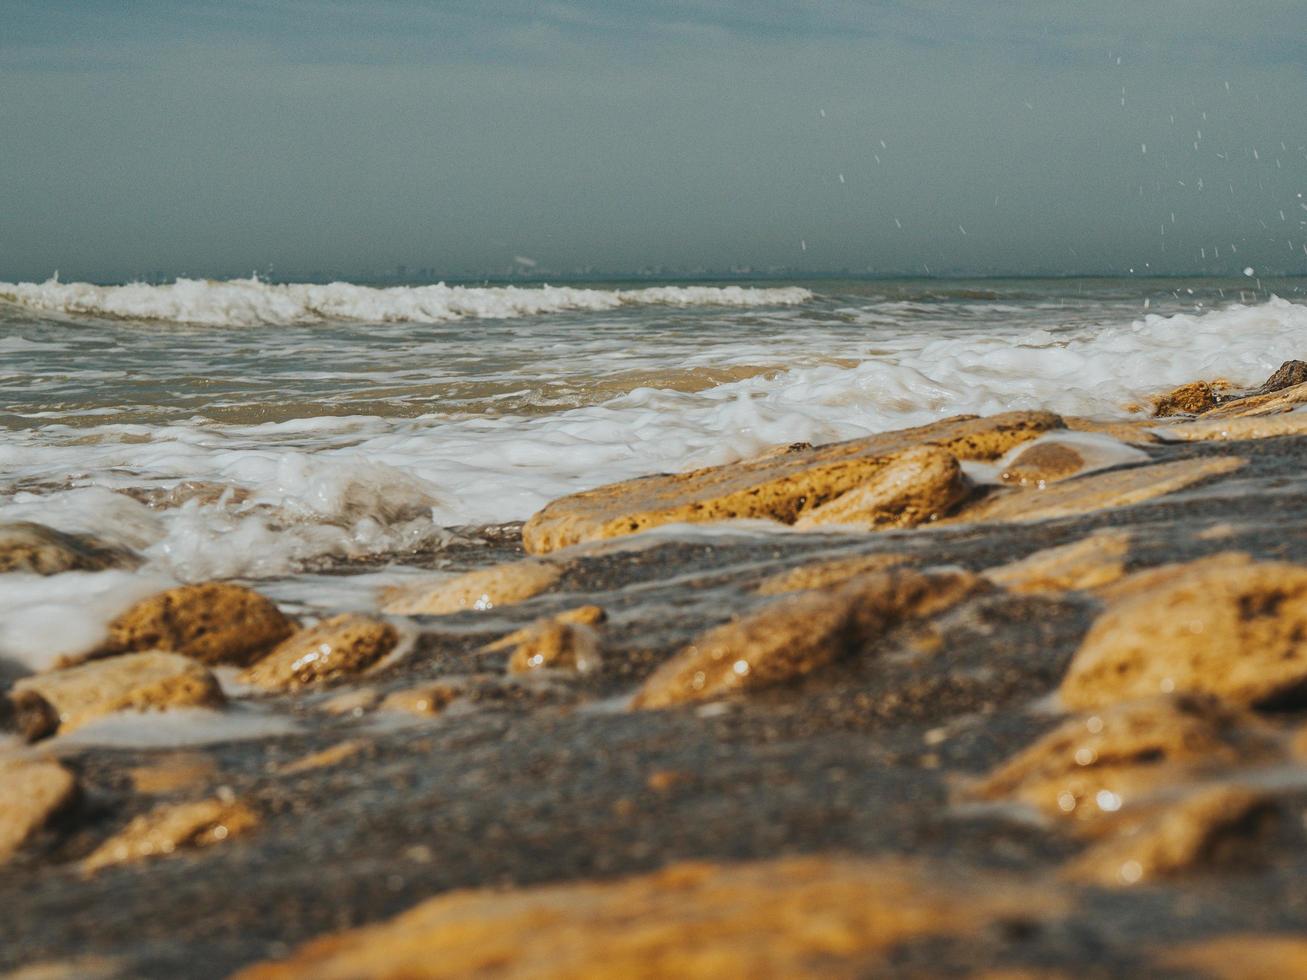 beau bord de mer avec de nombreuses pierres de mer de différentes tailles, partie sauvage de la plage, journée ensoleillée. les vagues battent contre le rivage rocheux. concept d'été. fond d'écran. haute qualité photo